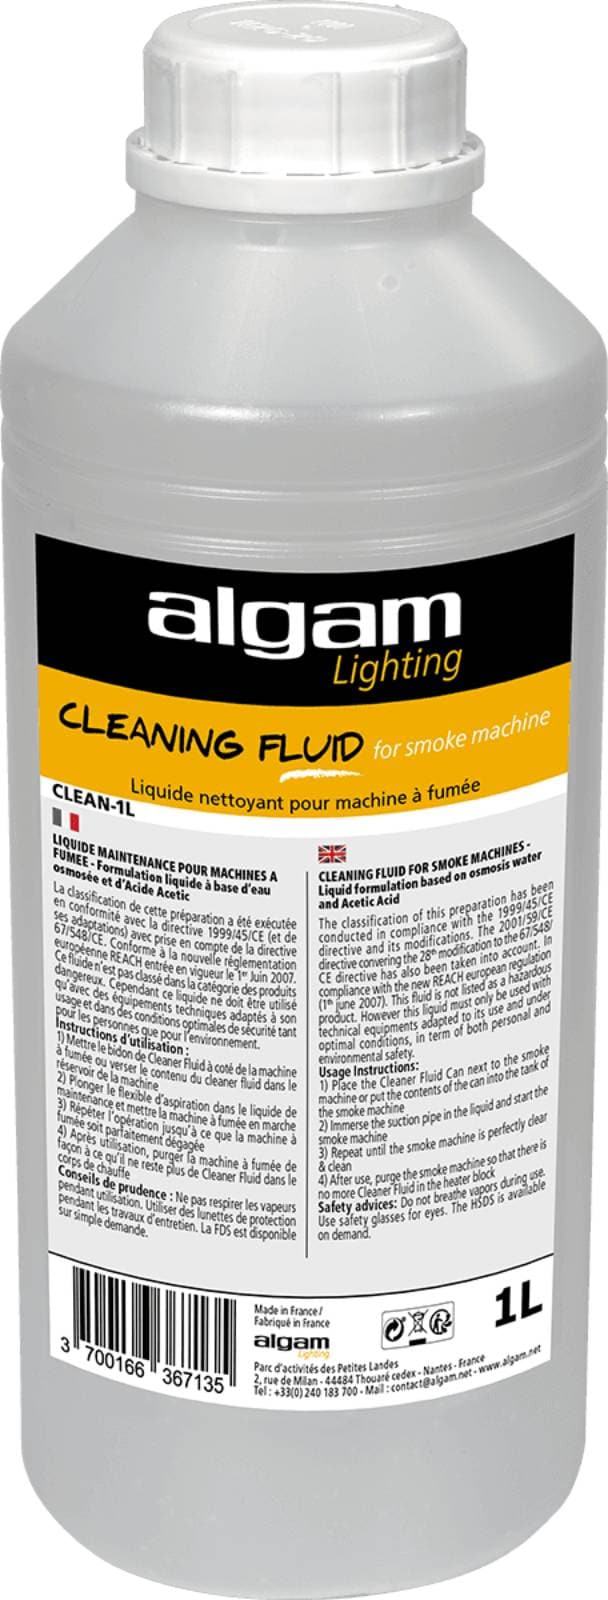 ALGAM LIGHTING CLEAN-1L-LIMPIADOR LIQUIDO 1L